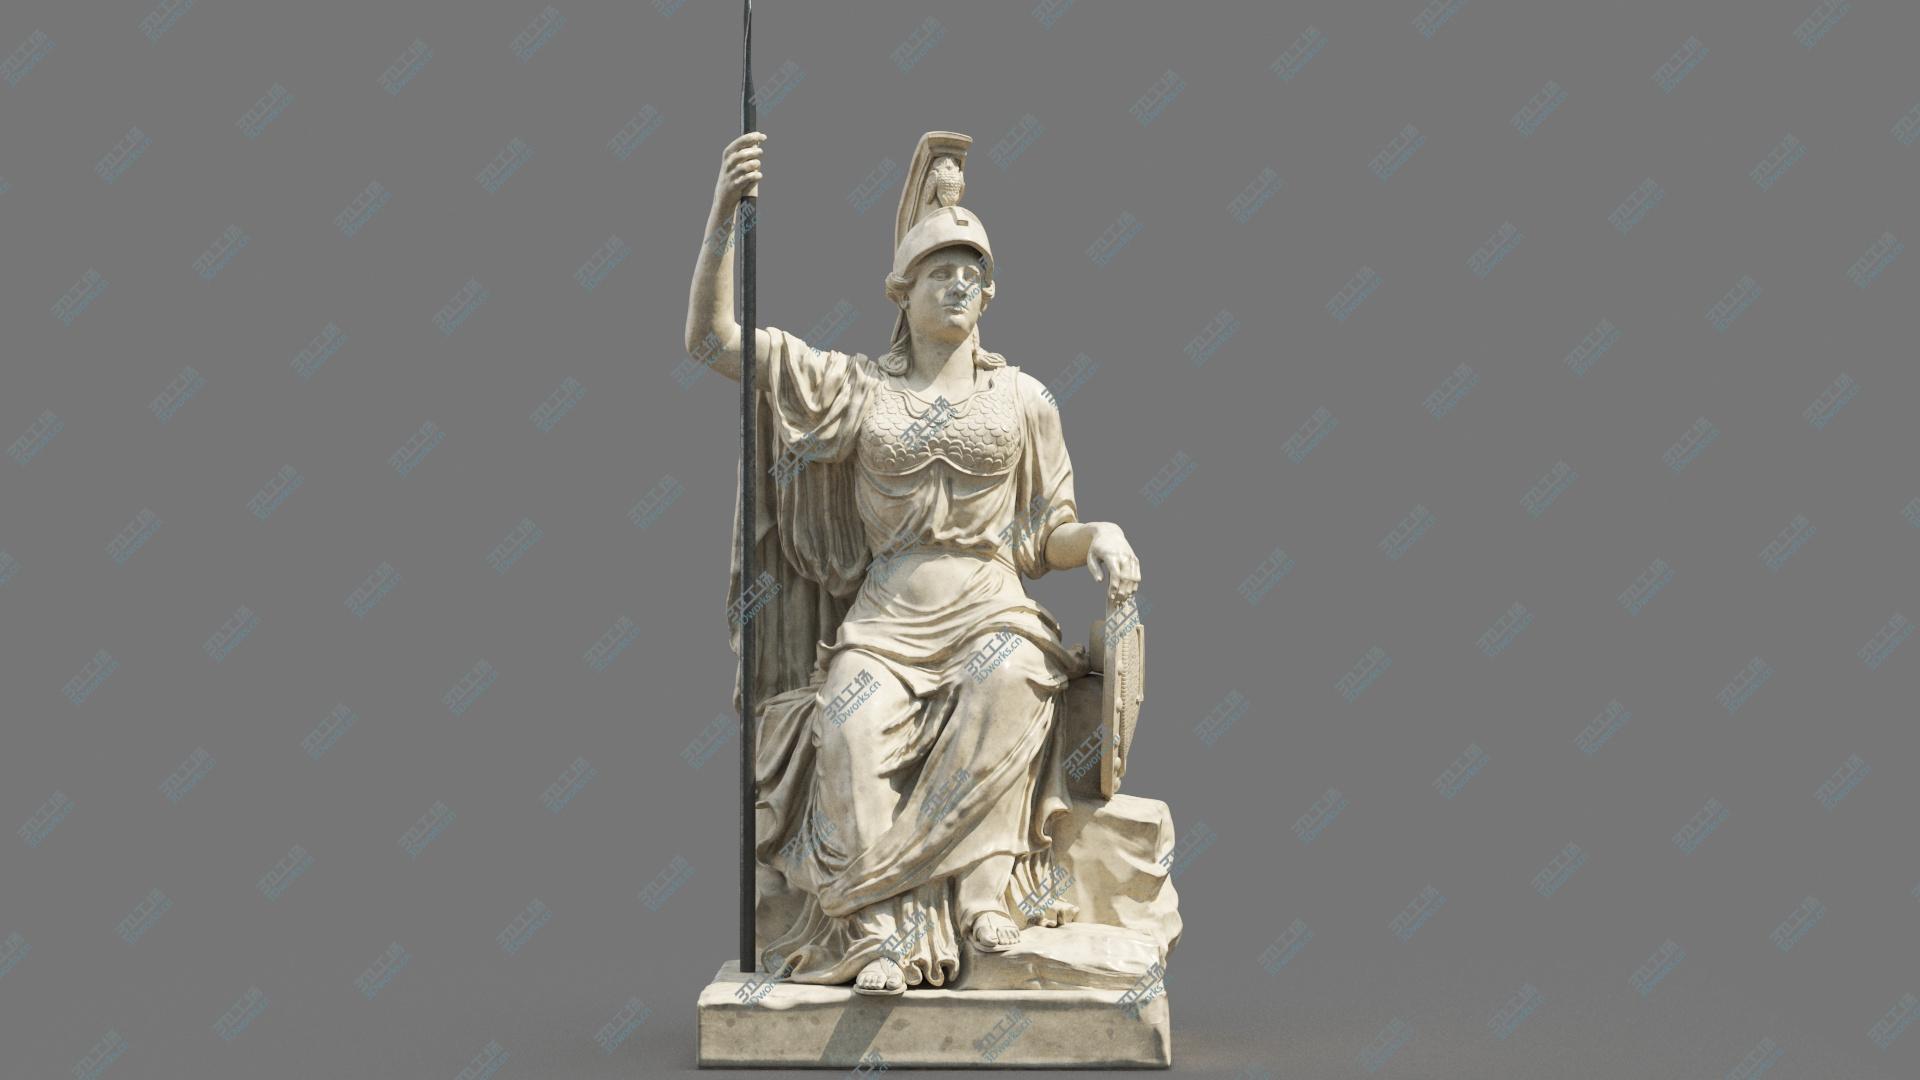 images/goods_img/202104094/Minerva Statue 3D model/2.jpg